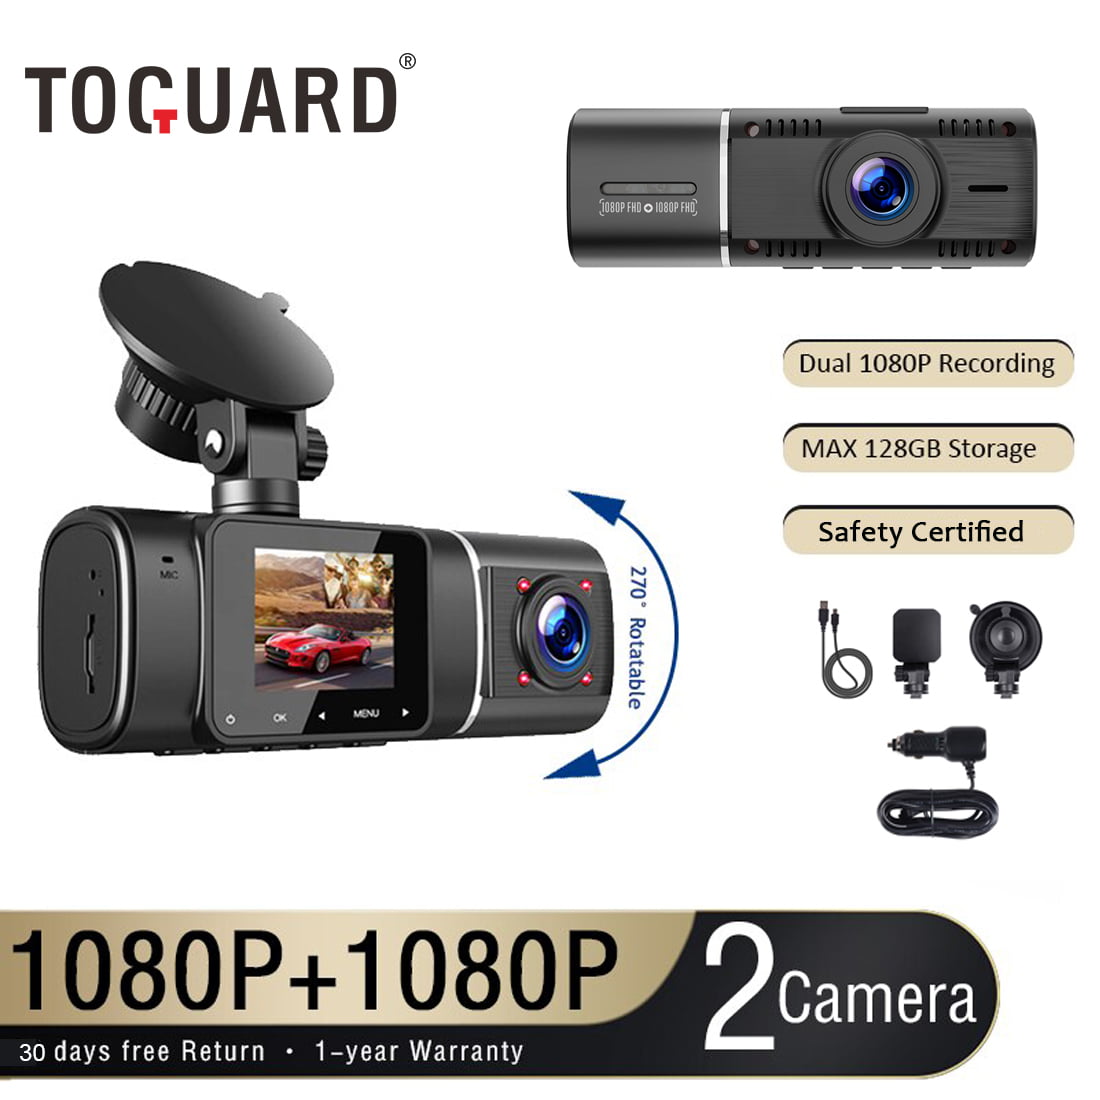 Voitures Caméra de Voiture pour Taxis TOGUARD Caméra Dual Dash 1080P +1080P Avant et Arrière Bord avec Vision Nocturne IR Camions Écran LCD 1,5 Pouces à Double Objectif Grand Angle 310° 